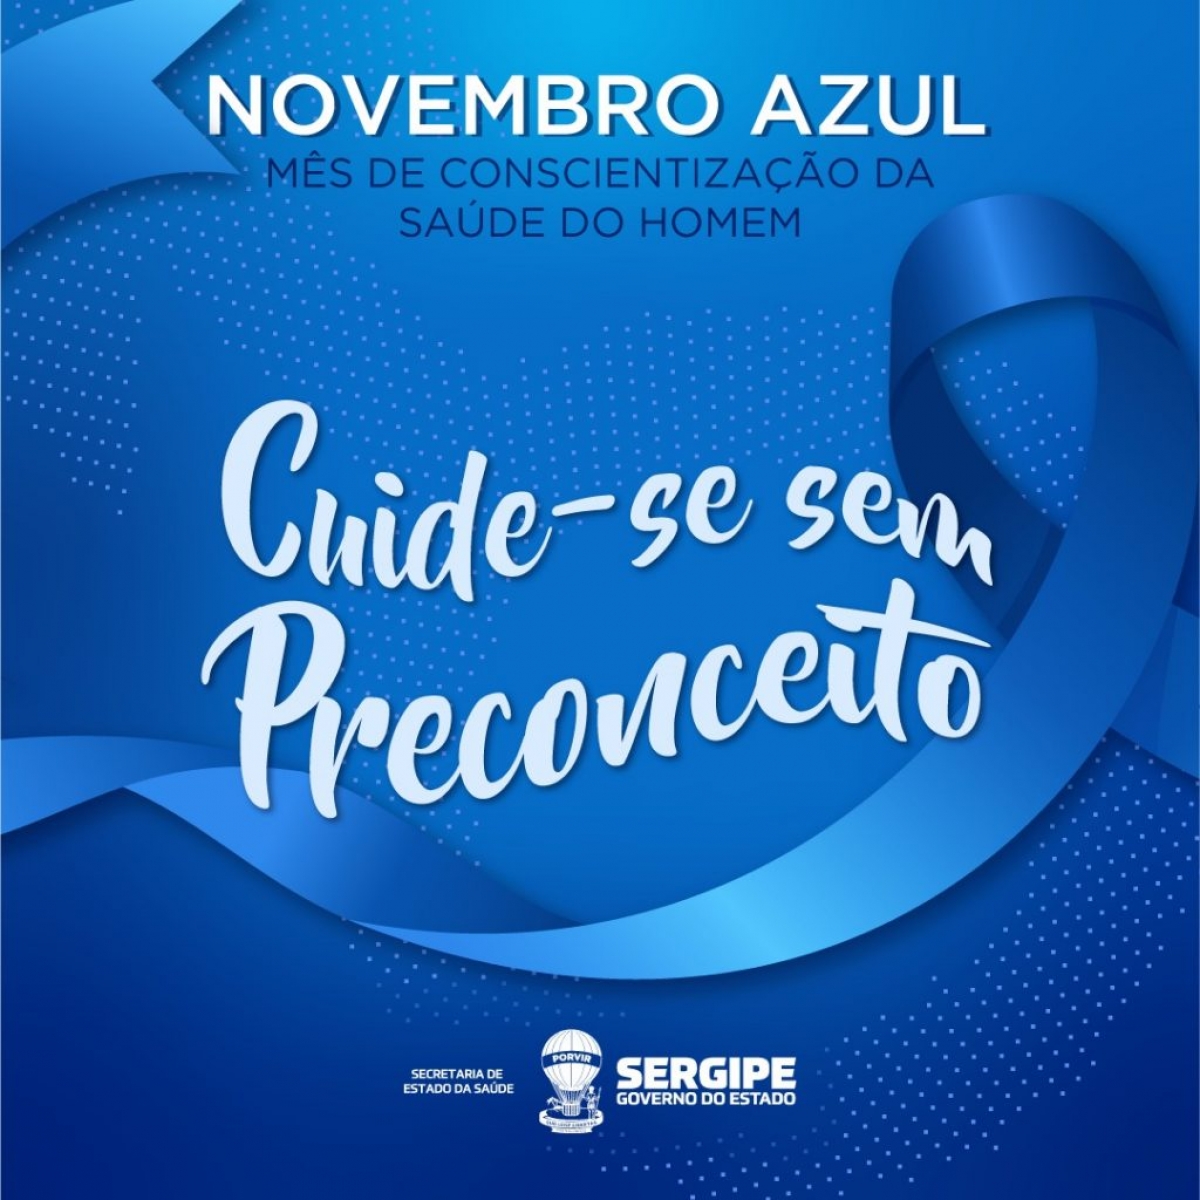 Novembro Azul traz alerta importante sobre a saúde do homem (Imagem: SES/SE)